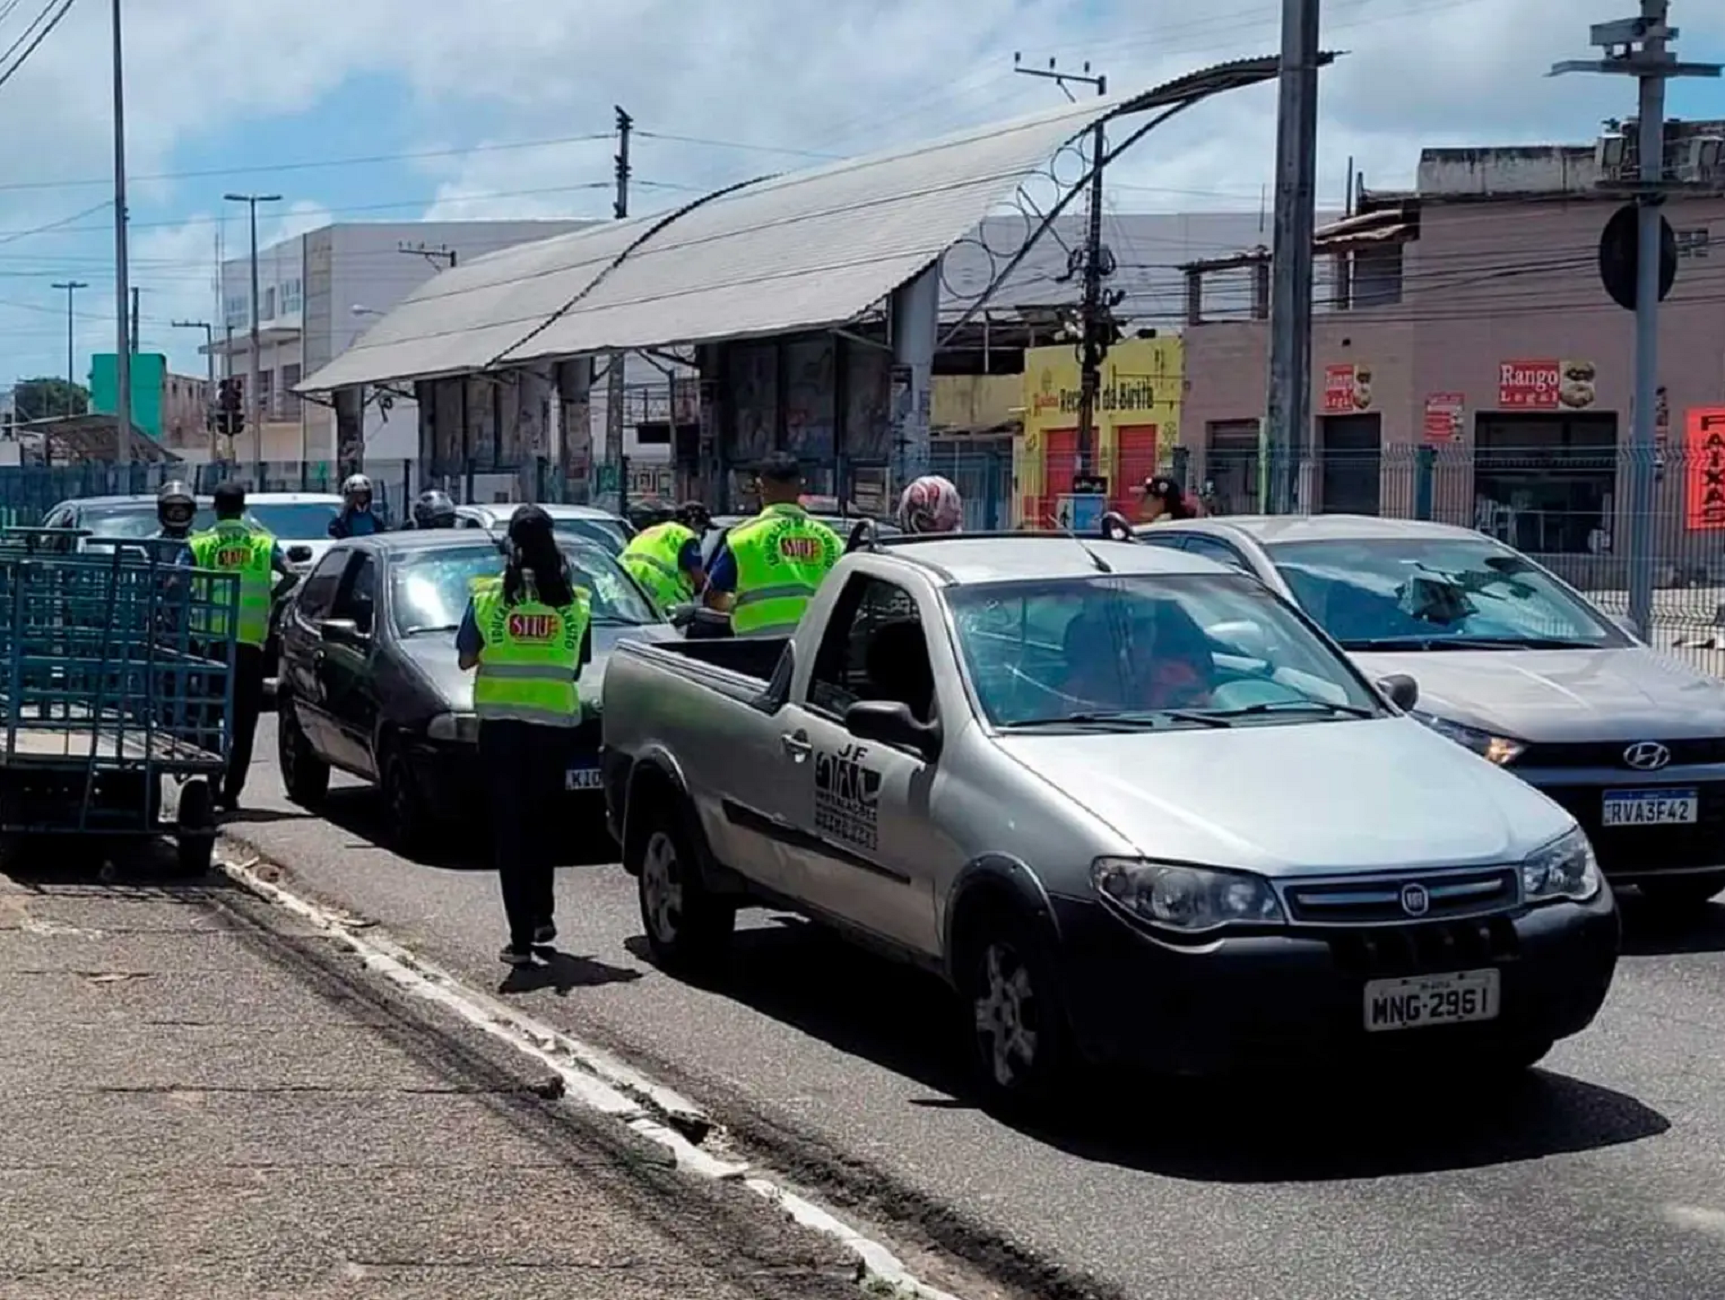 STTU orienta condutores sobre desvios no trânsito durante obra na avenida Felizardo Moura